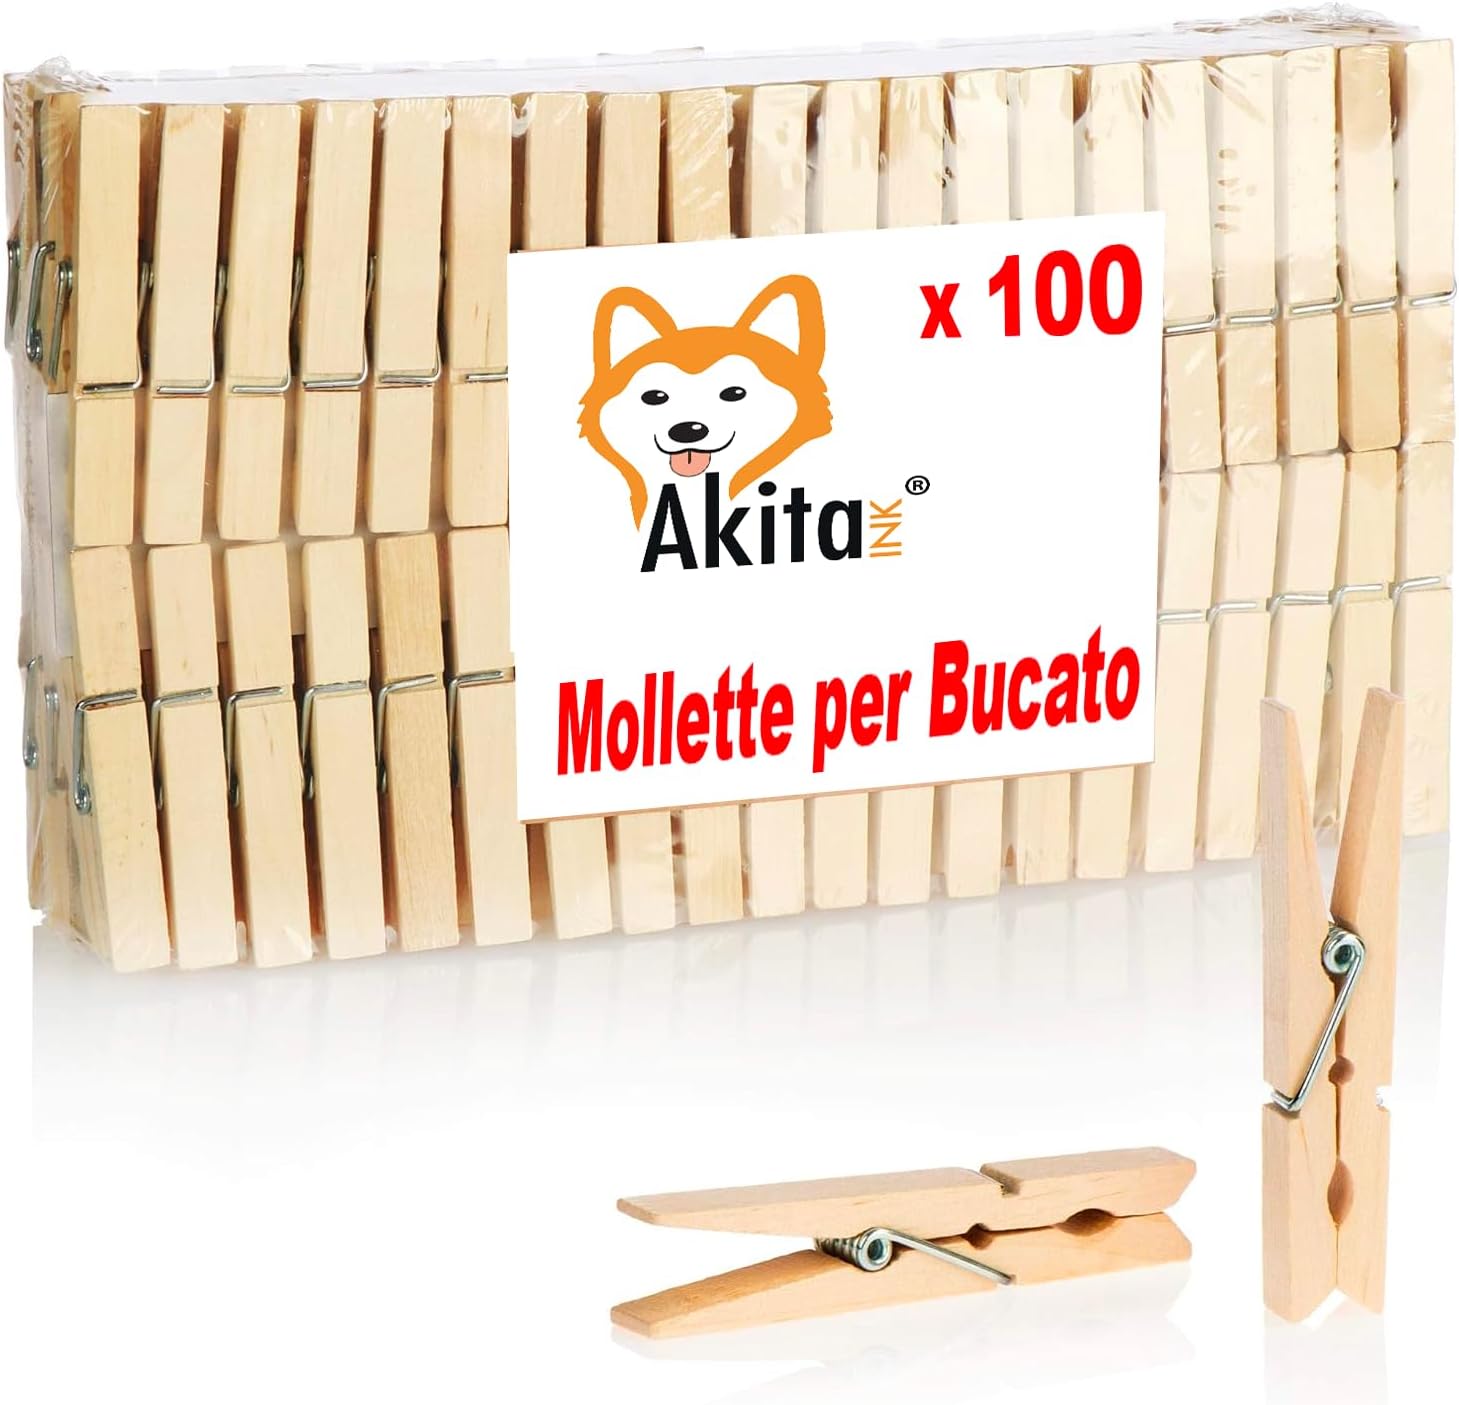 Akitaink - Mollette per Bucato 100 Pezzi, Mollette in Legno, lunghezza 10 cm